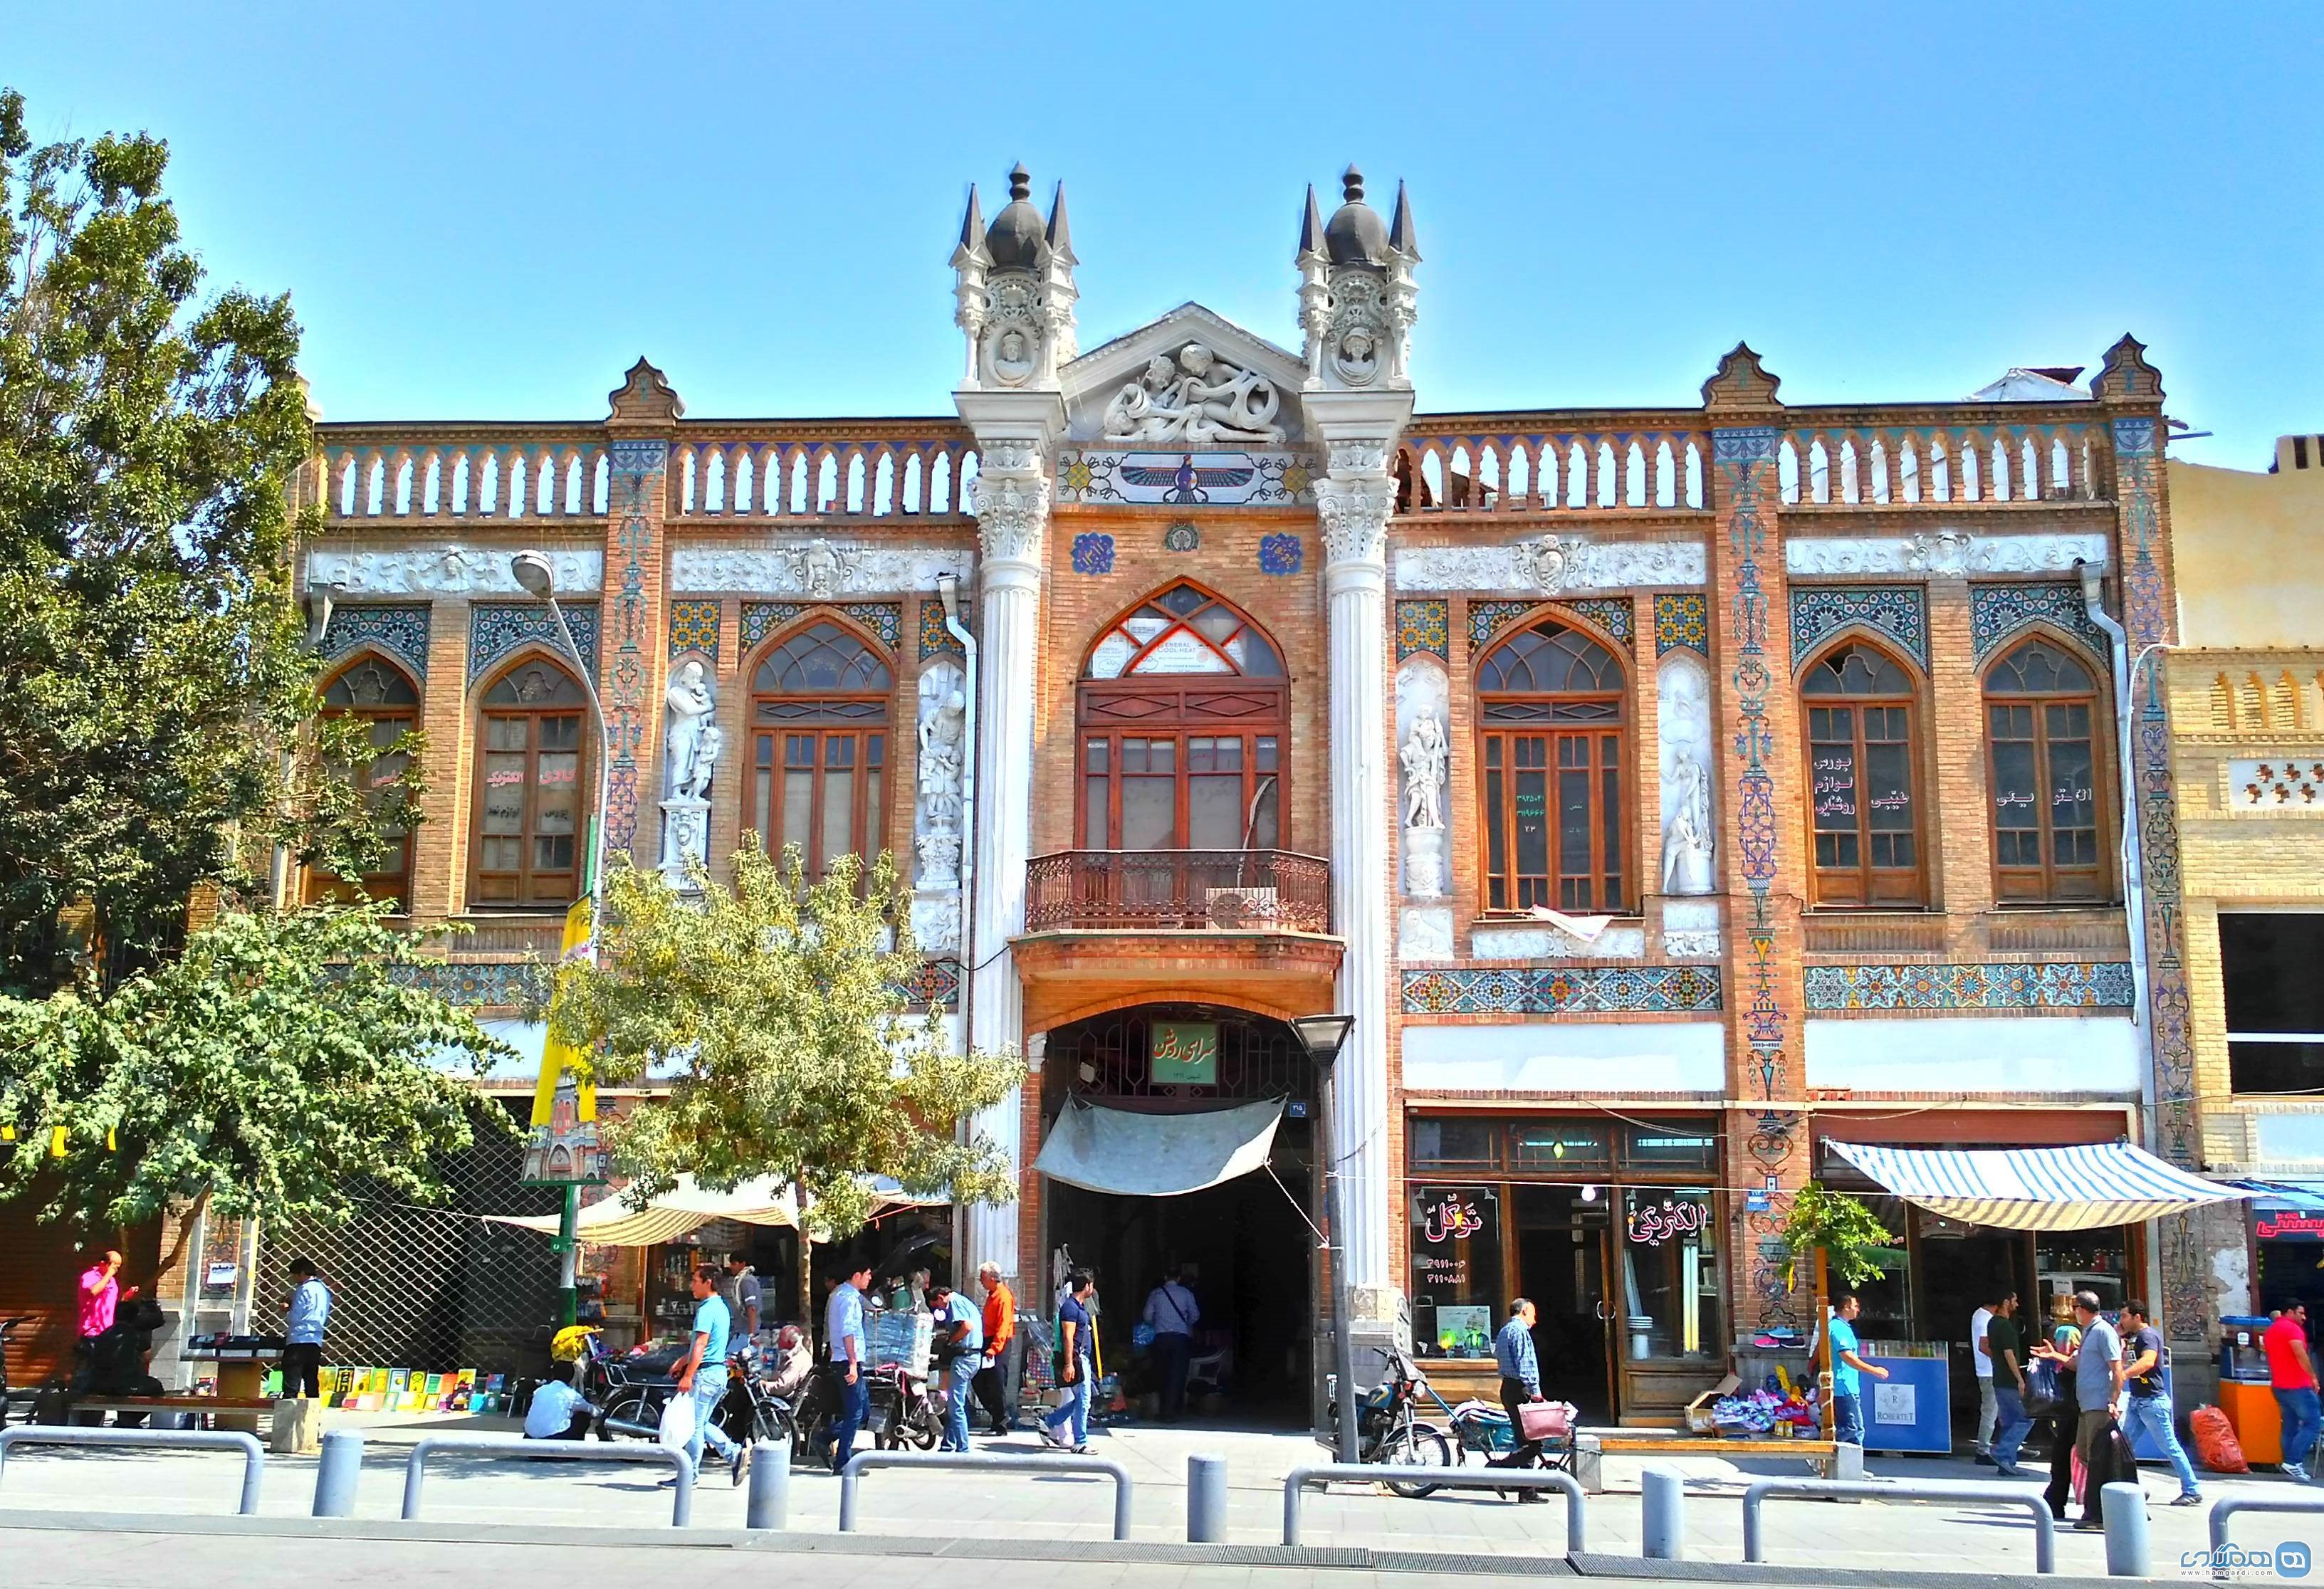 تاریخچه بازار تهران